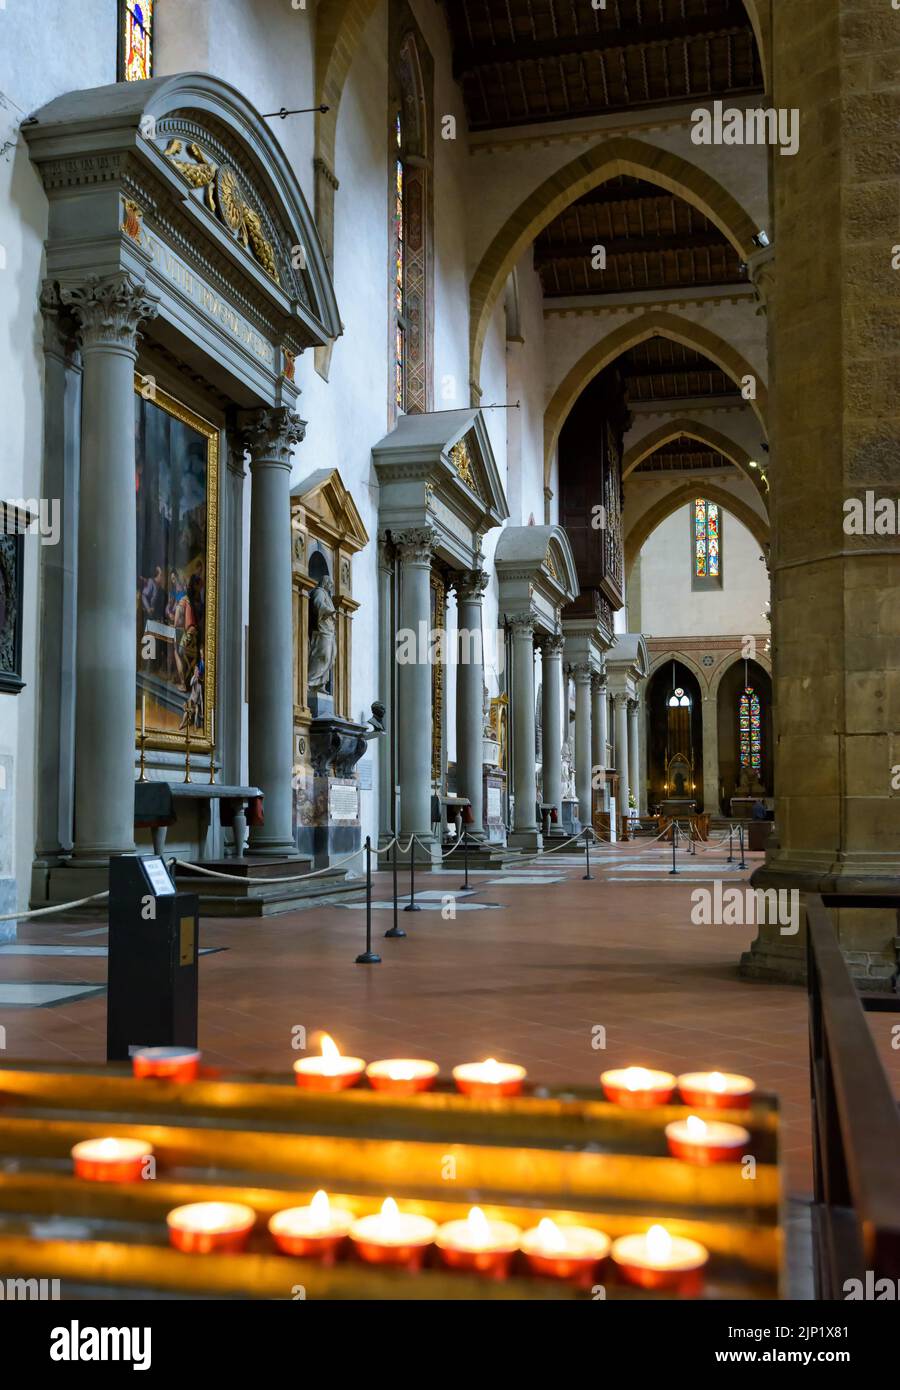 Im Inneren der Basilica di Santa Croce in Florenz. Es ist Touristenattraktion von Florenz. Luxuriöse Innenausstattung von Santa Croce Churc Stockfoto